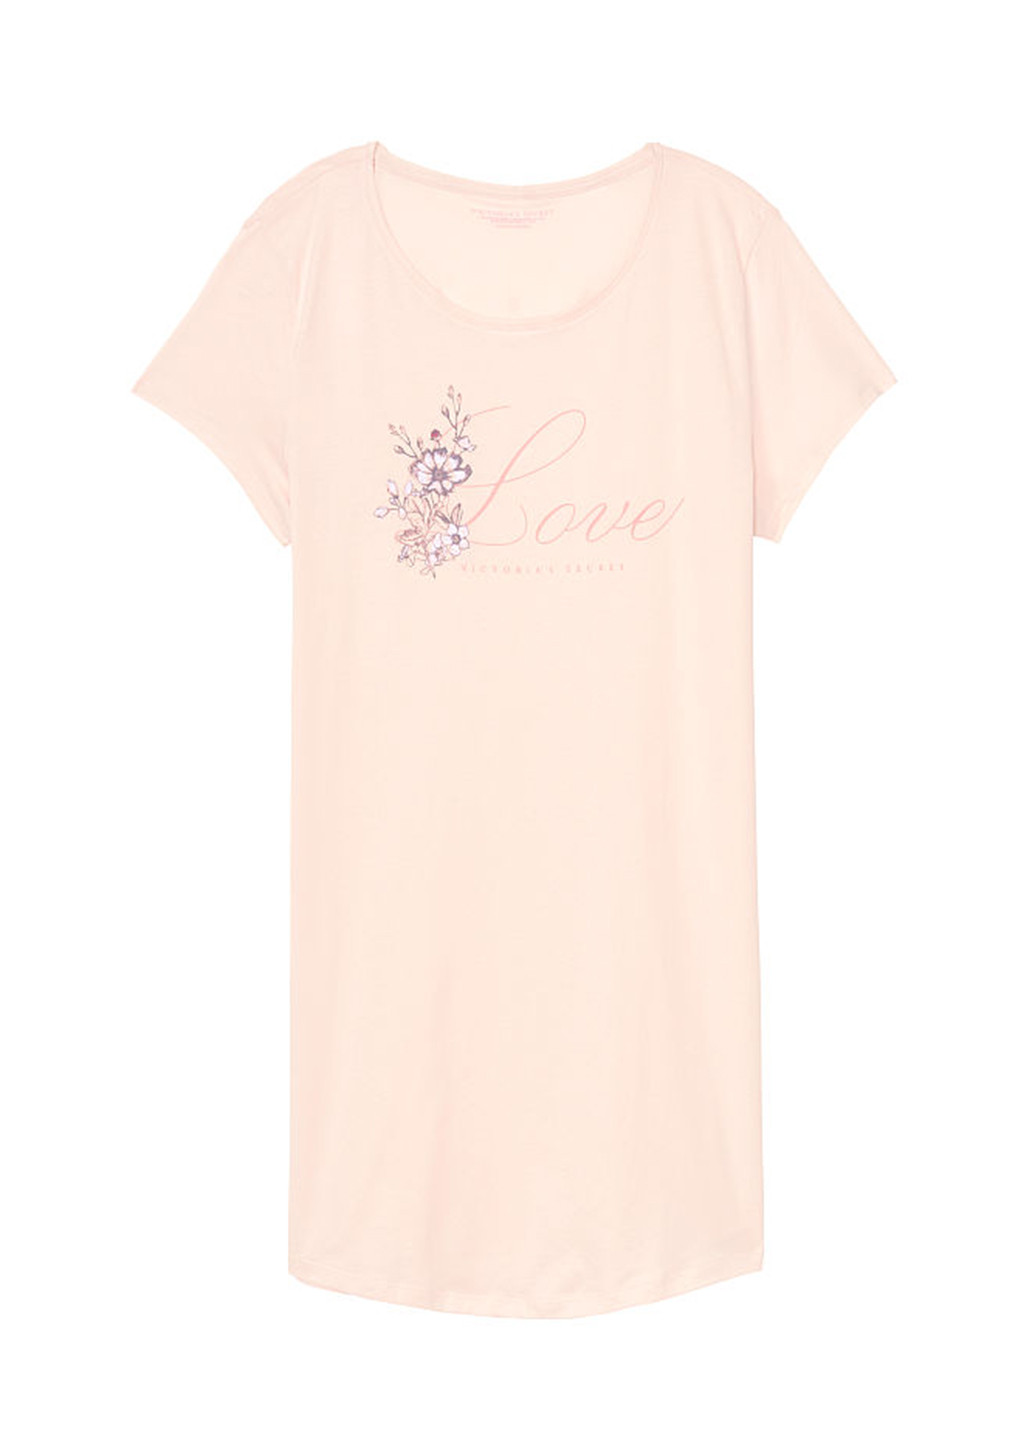 Ночная рубашка Victoria's Secret надпись светло-розовая домашняя трикотаж, хлопок